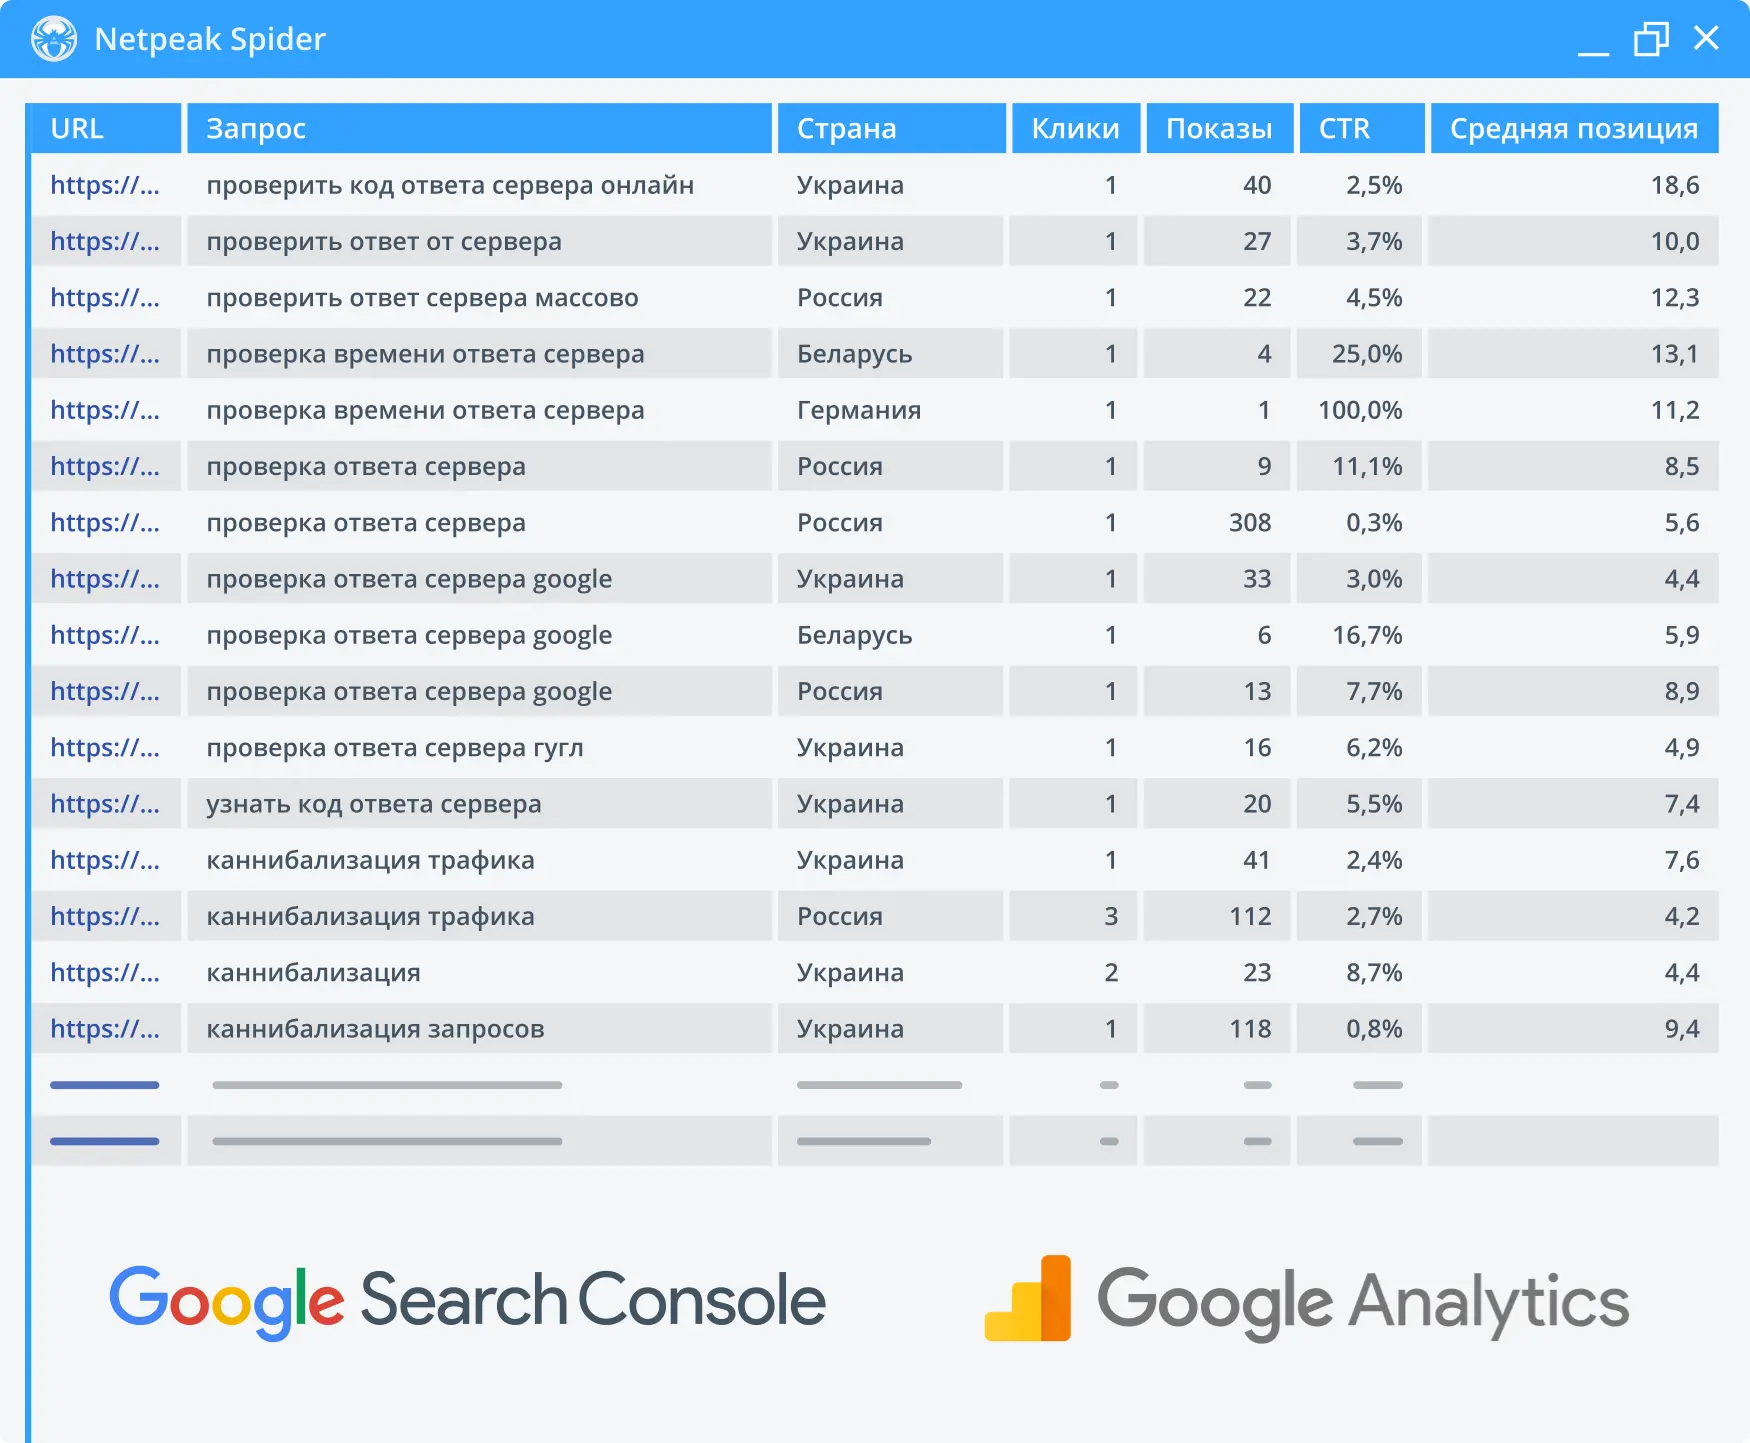 Интегрируйте Google Analytics и Search Console в работу с Netpeak Spider, чтобы дополнить данные по целевому сайту.